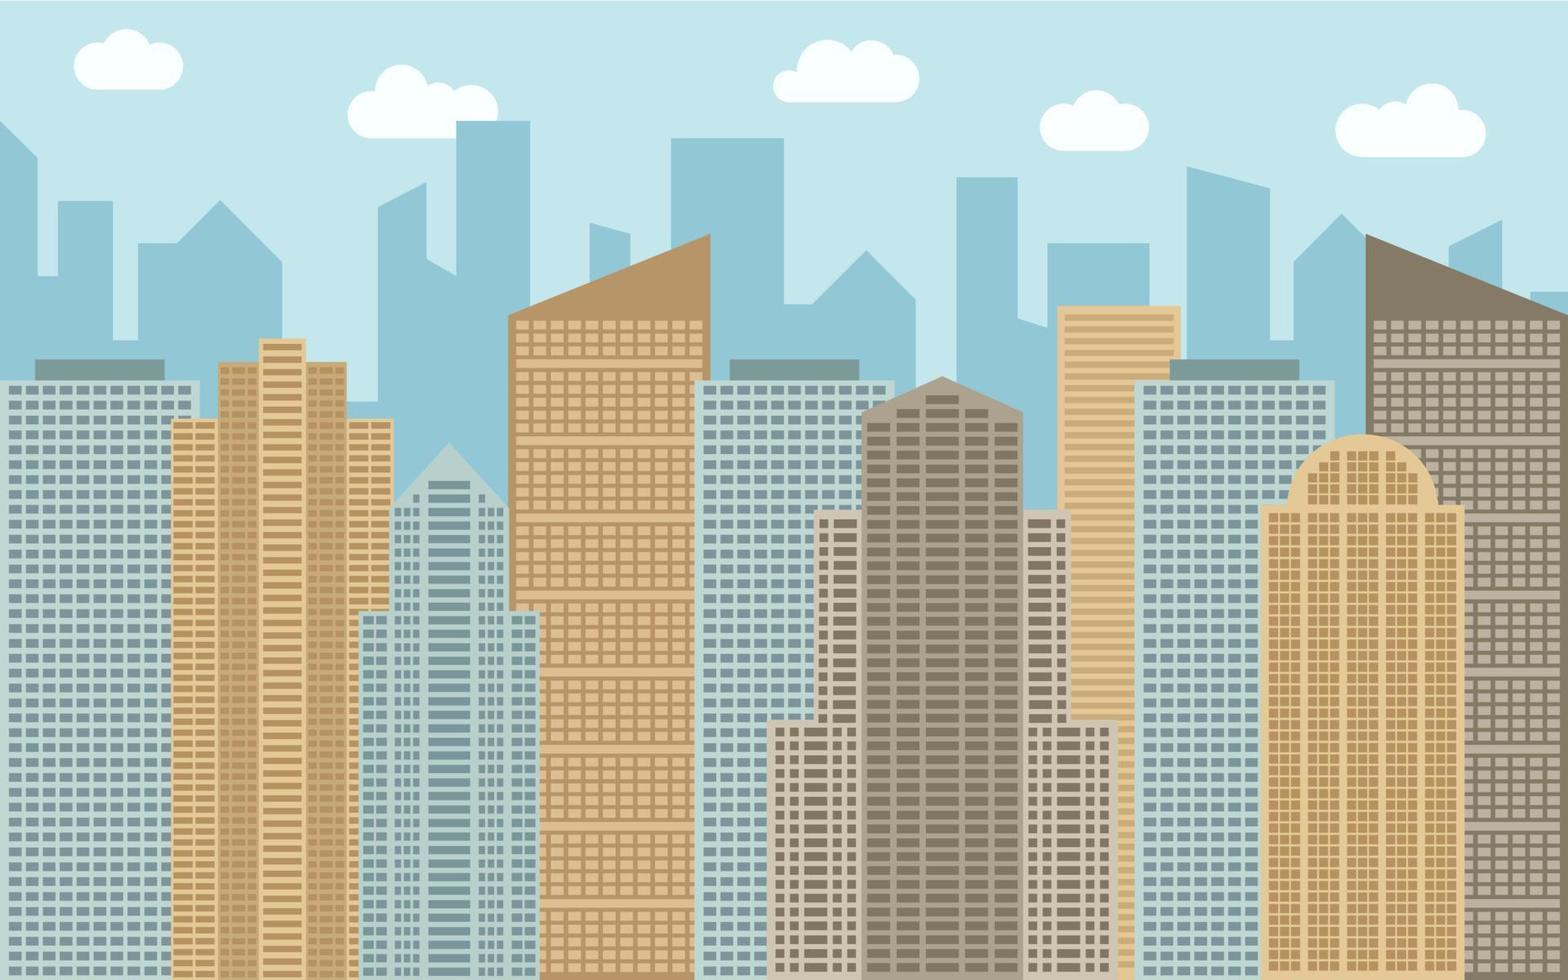 Vektorgrafik der städtischen Landschaft. straßenansicht mit stadtbild, wolkenkratzern und modernen gebäuden am sonnigen tag. Stadtraum im flachen Hintergrundkonzept. vektor